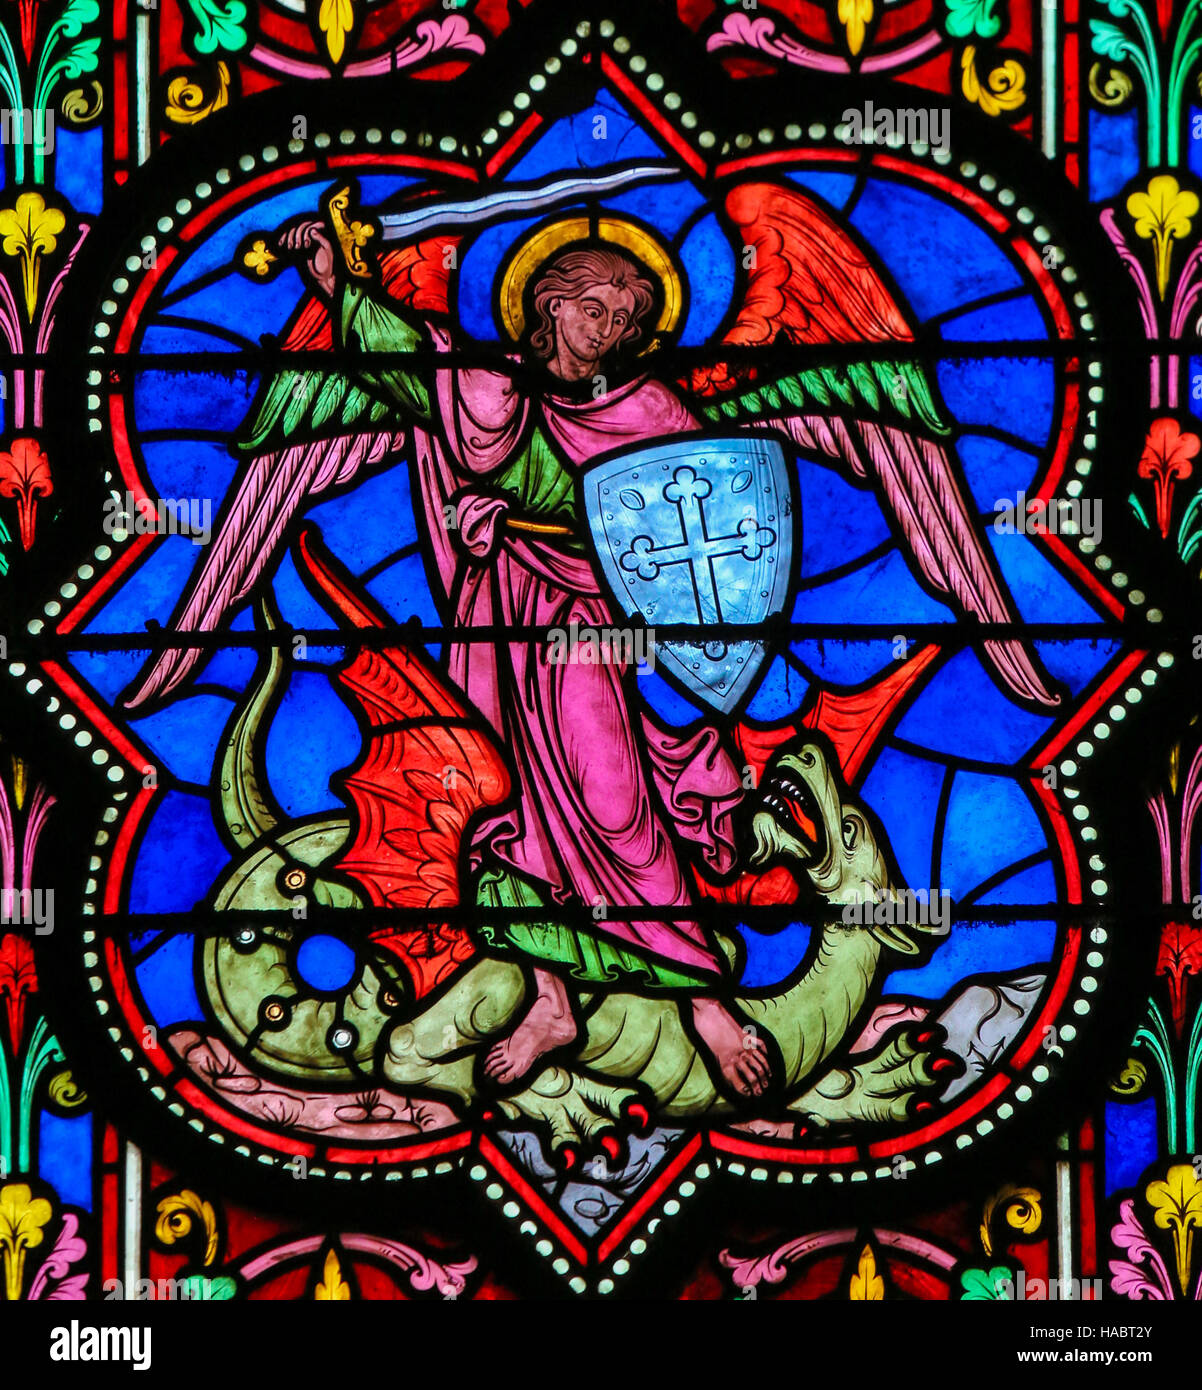 Vitrail dans la cathédrale de Bayeux, France, représentant l'Archange Michel terrassant Satan, un dragon. Banque D'Images